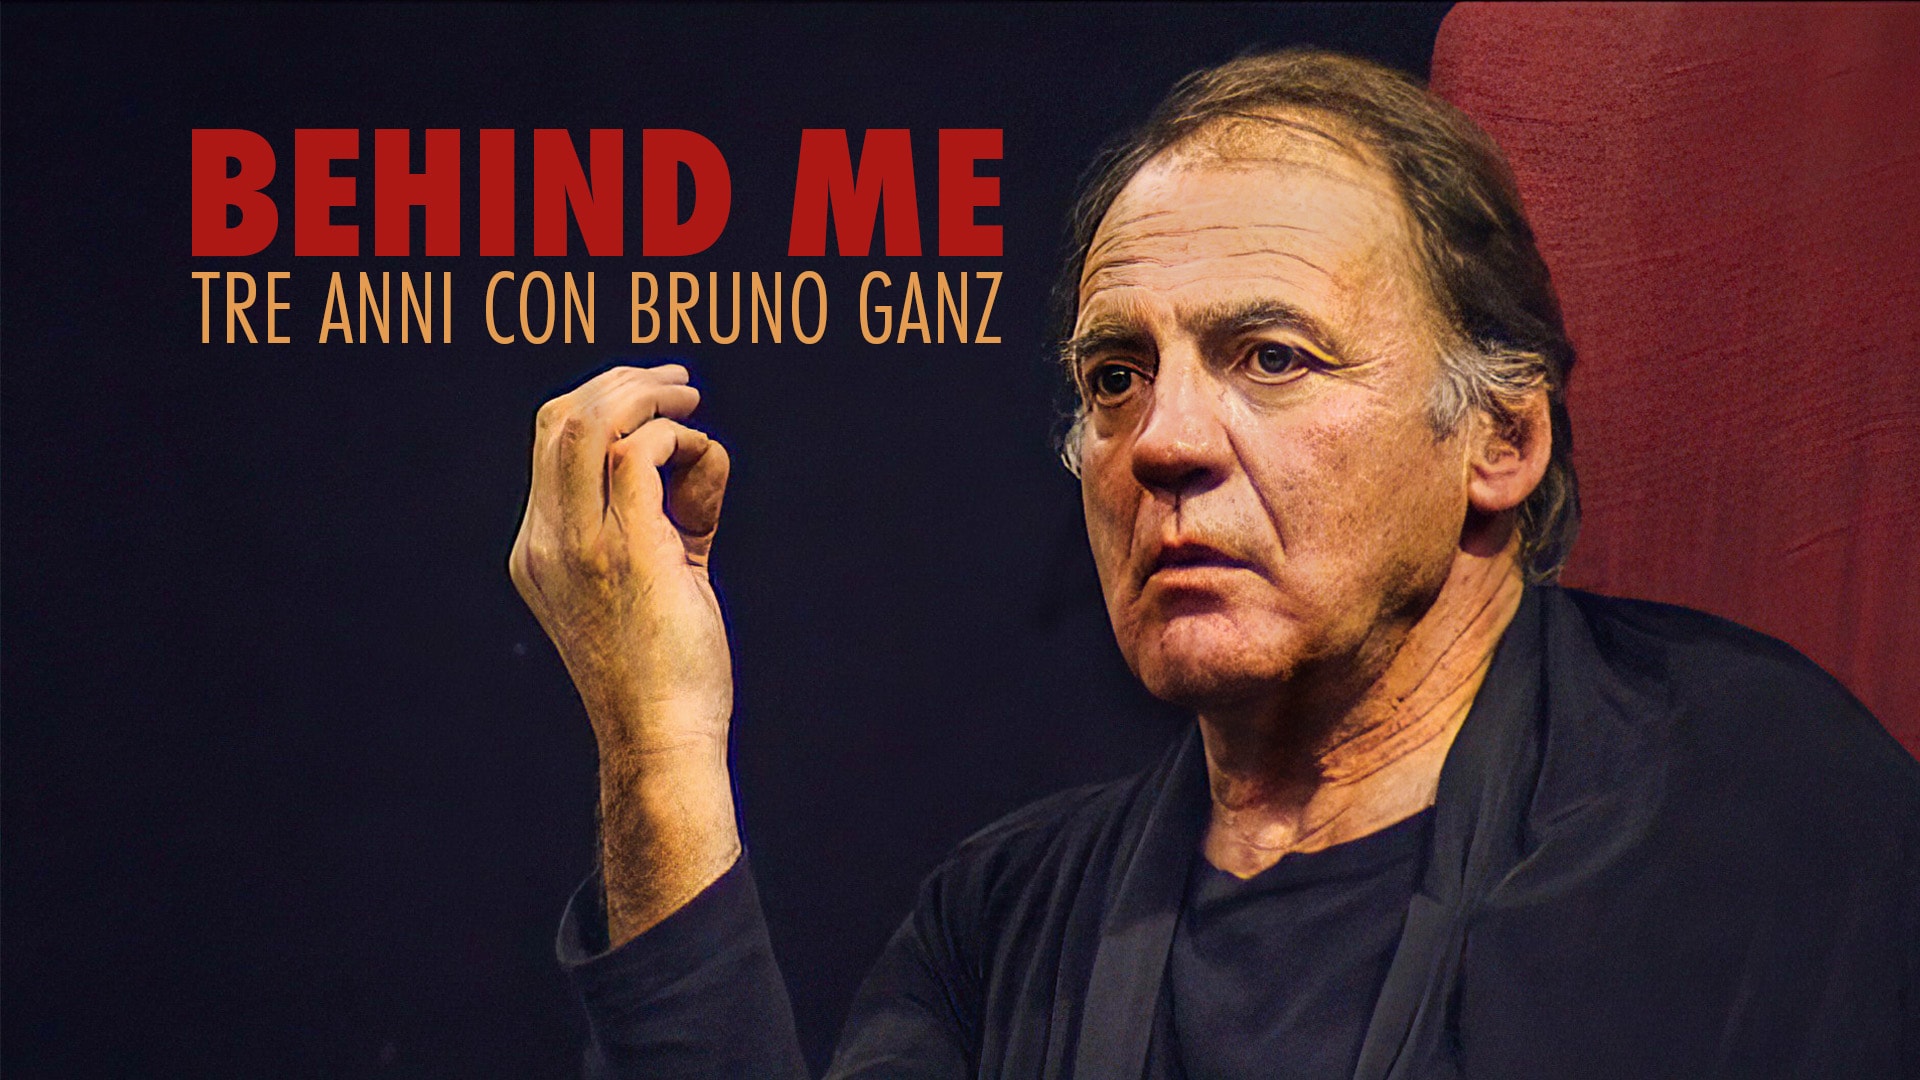 Behind Me - Tre anni con Bruno Ganz